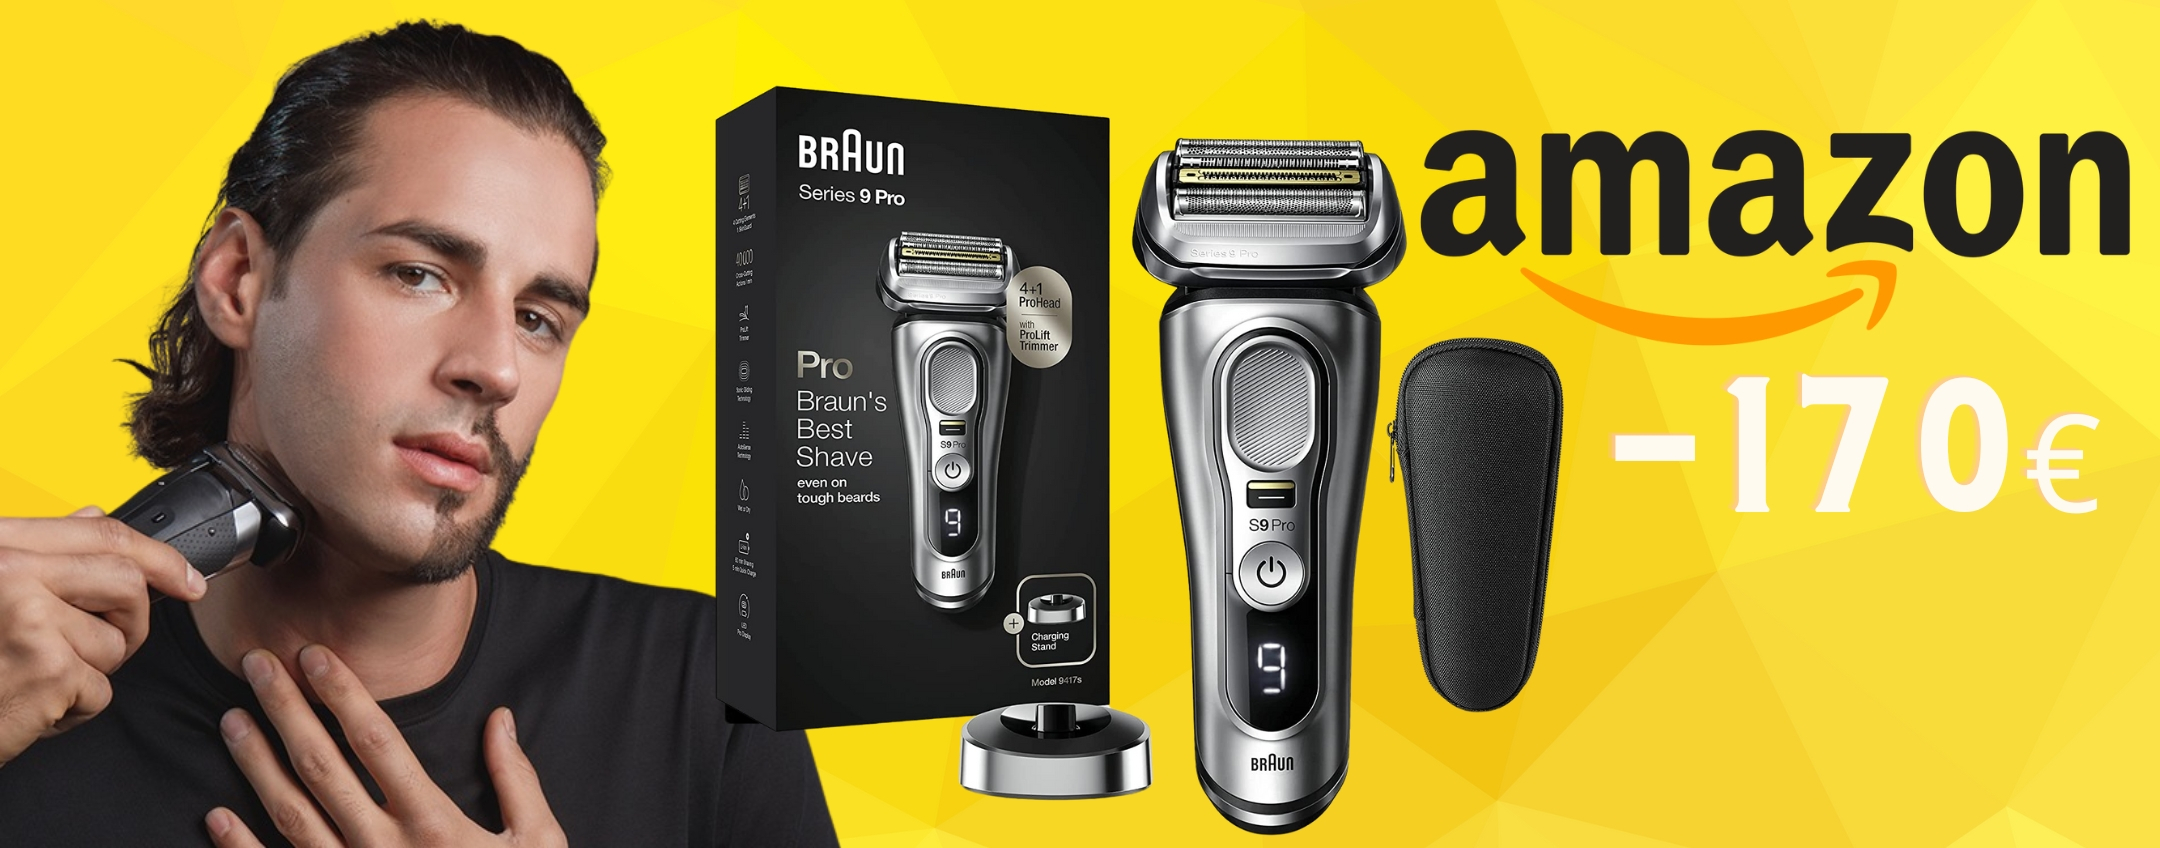 Braun Series 9 Pro a prezzo SHOCK su Amazon (-46%)